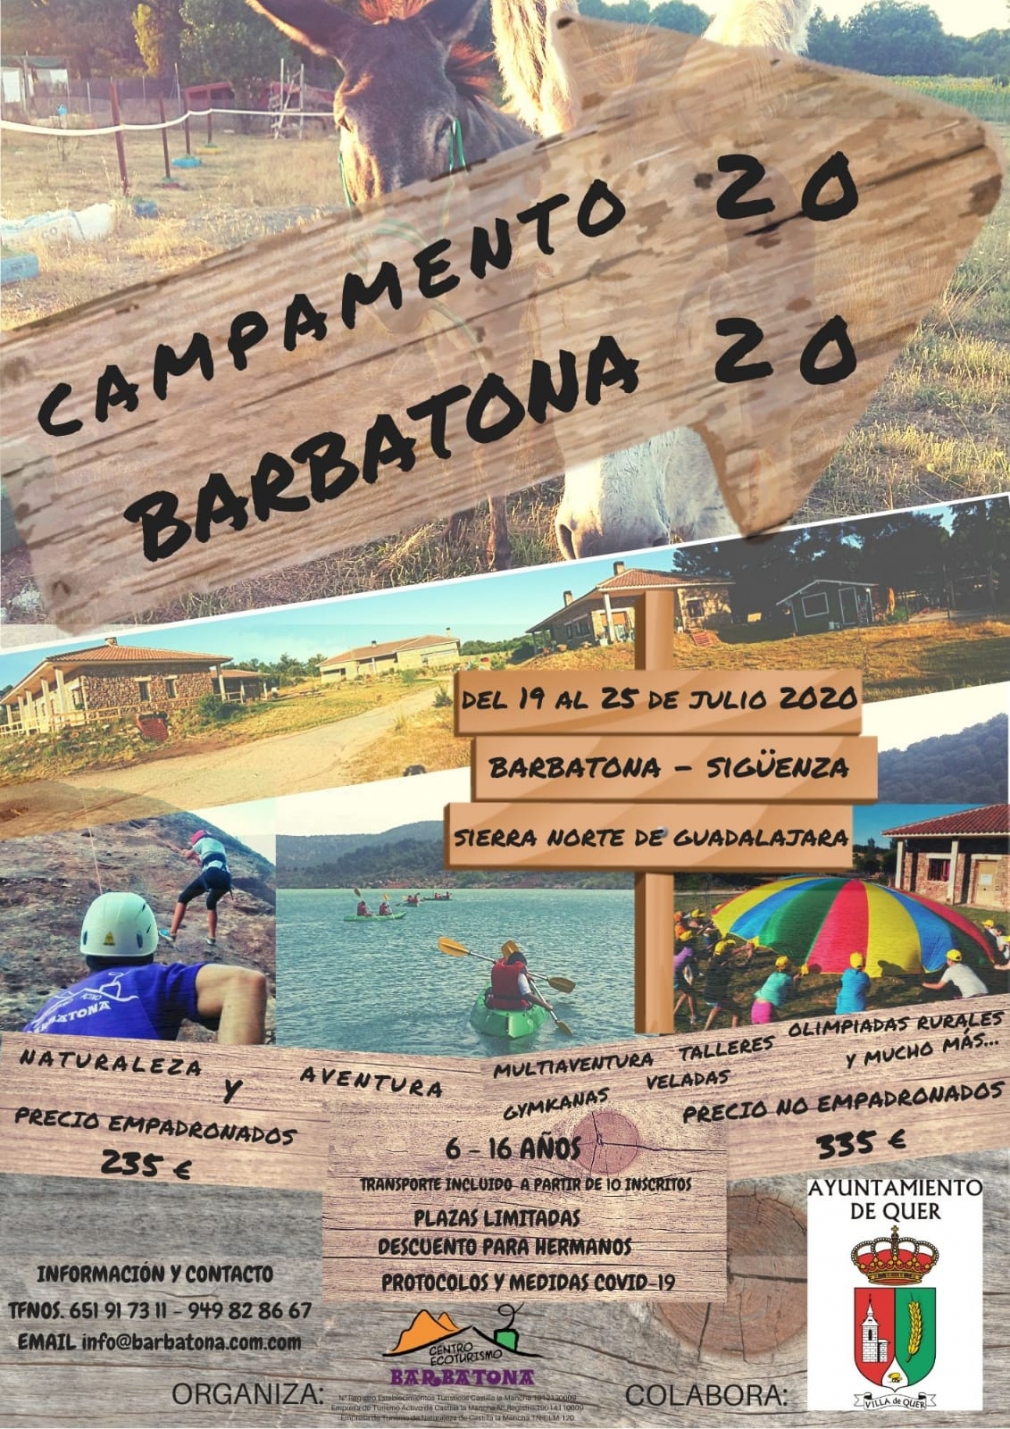 Toda la información sobre el campamento de verano 2020 en Barbatona, aquí